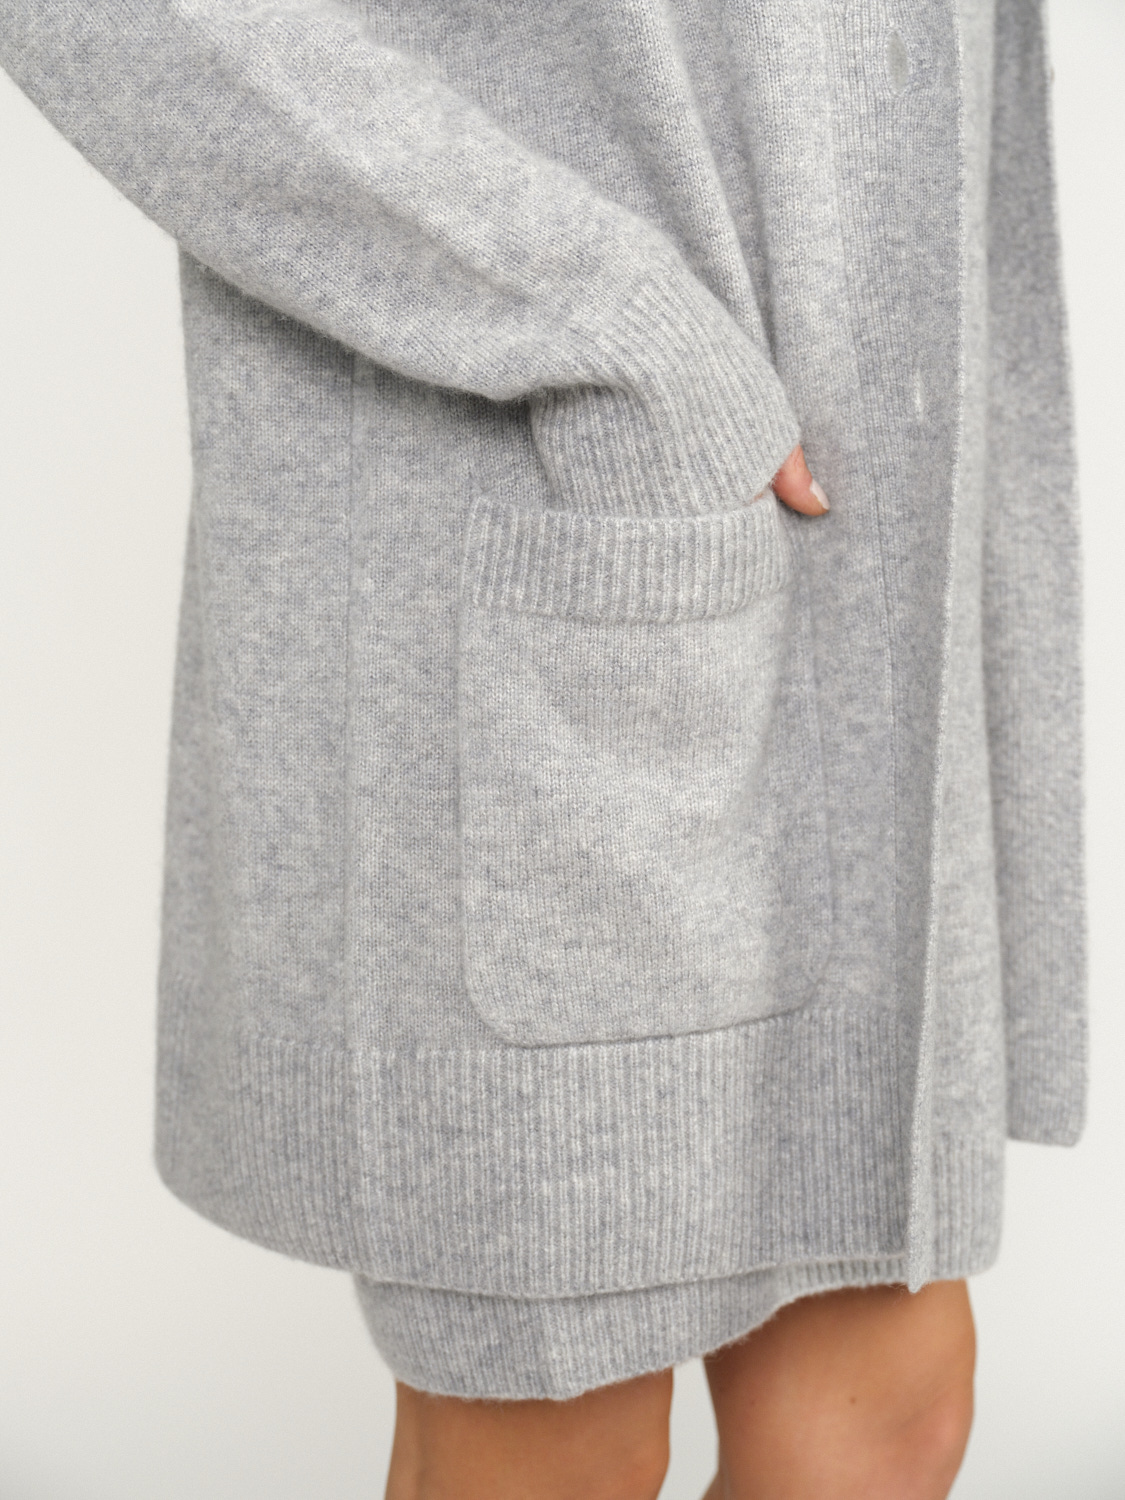 Iris von Arnim Betina - Cardigan with button placket in cashmere and silk grey M/L